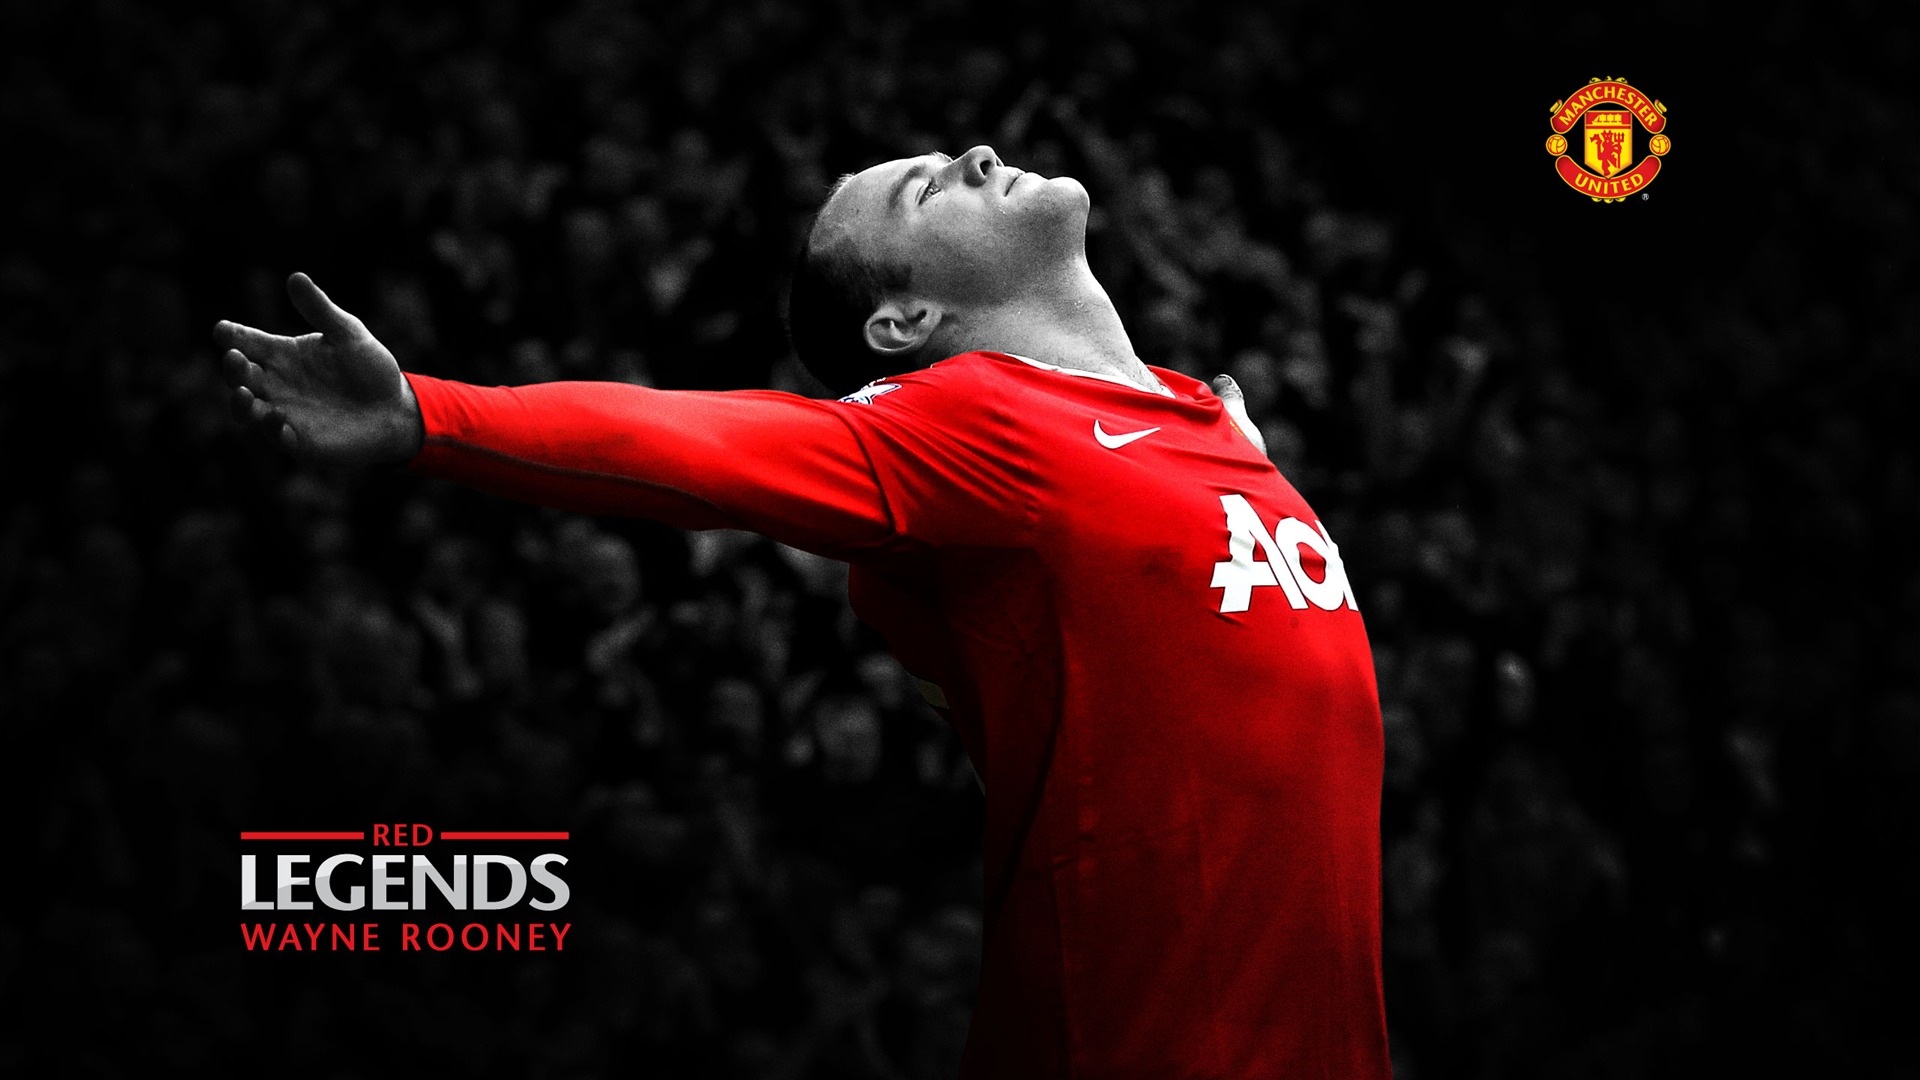 Manchester United Wallpaper Desktop Image